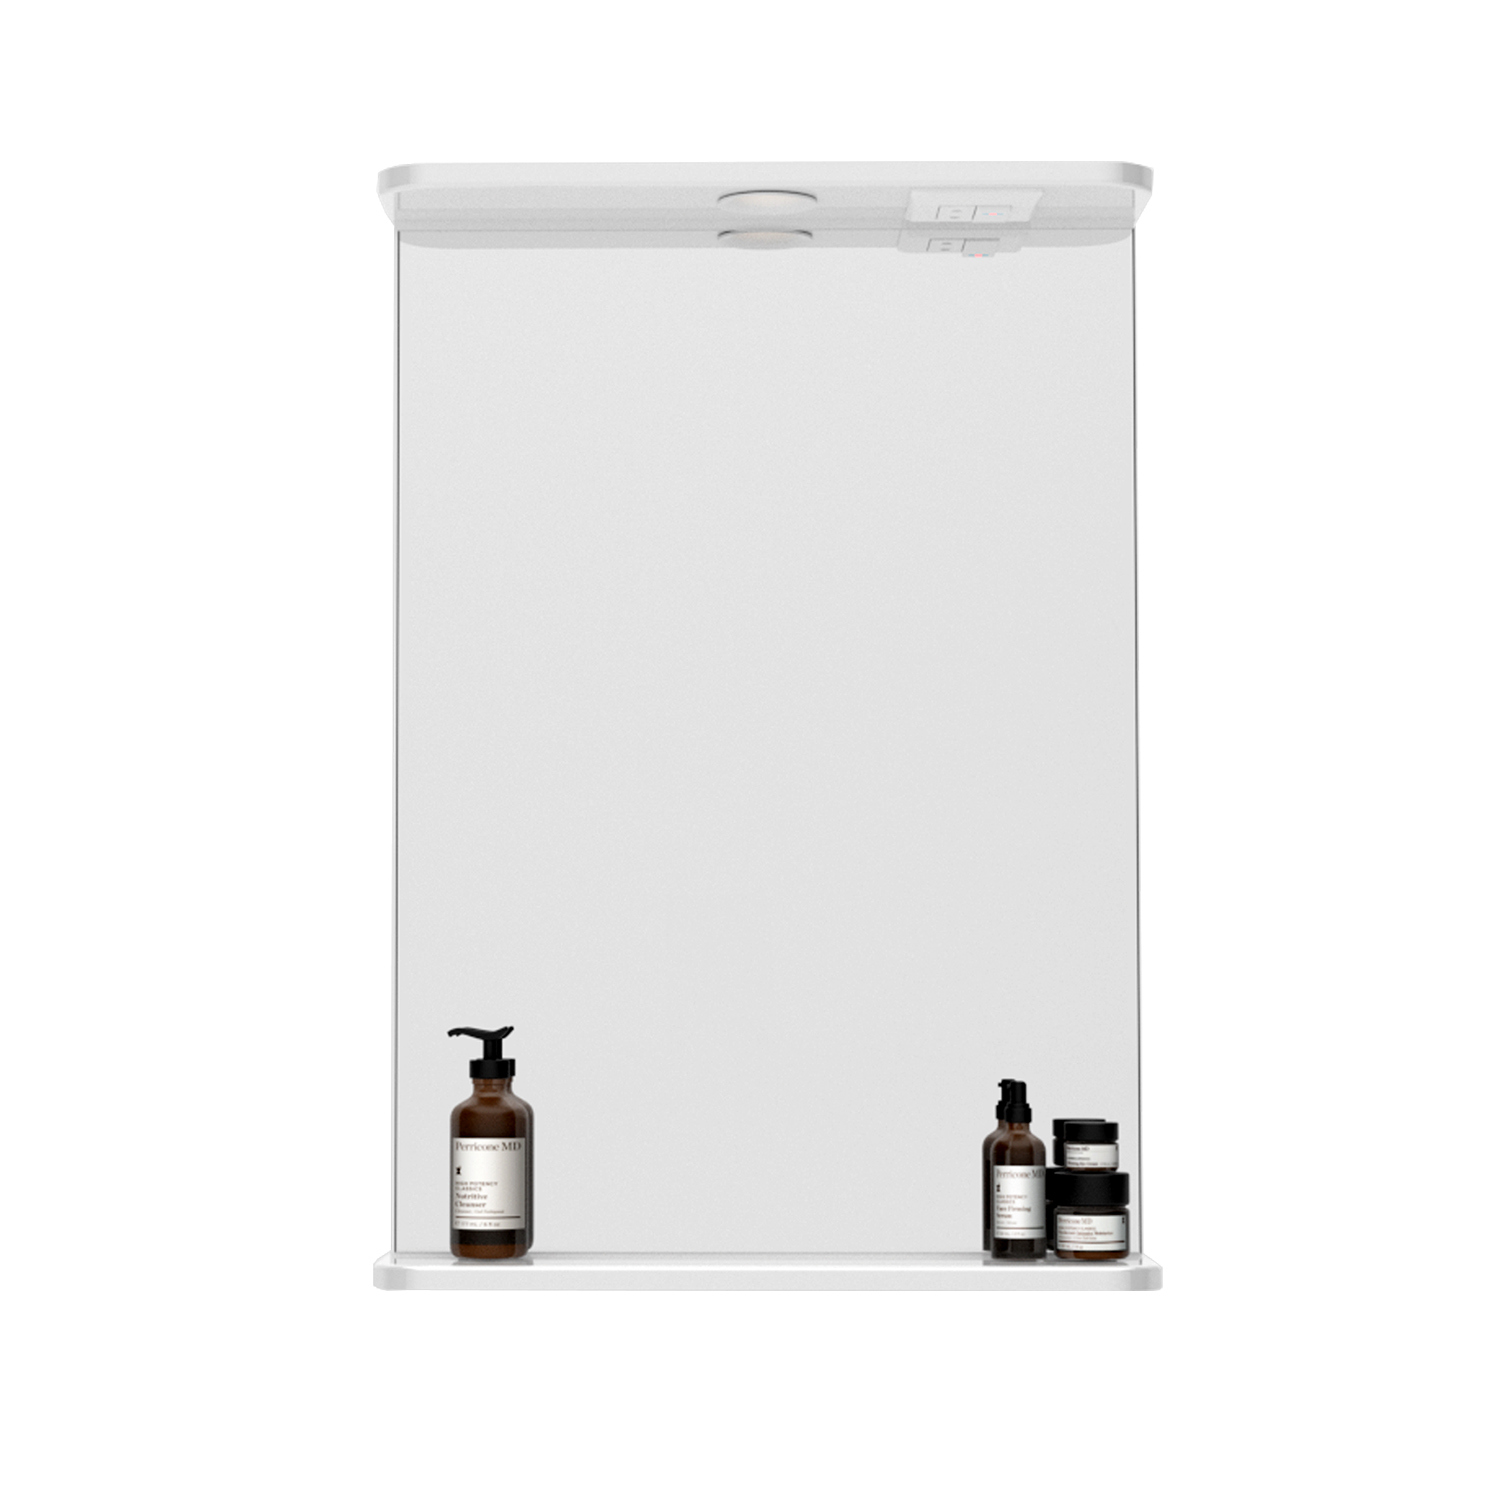 90235514 Зеркало для ванной со подсветкой 44.1-2.4.1. 50см Универсальное STLM-0142987 SANSTAR